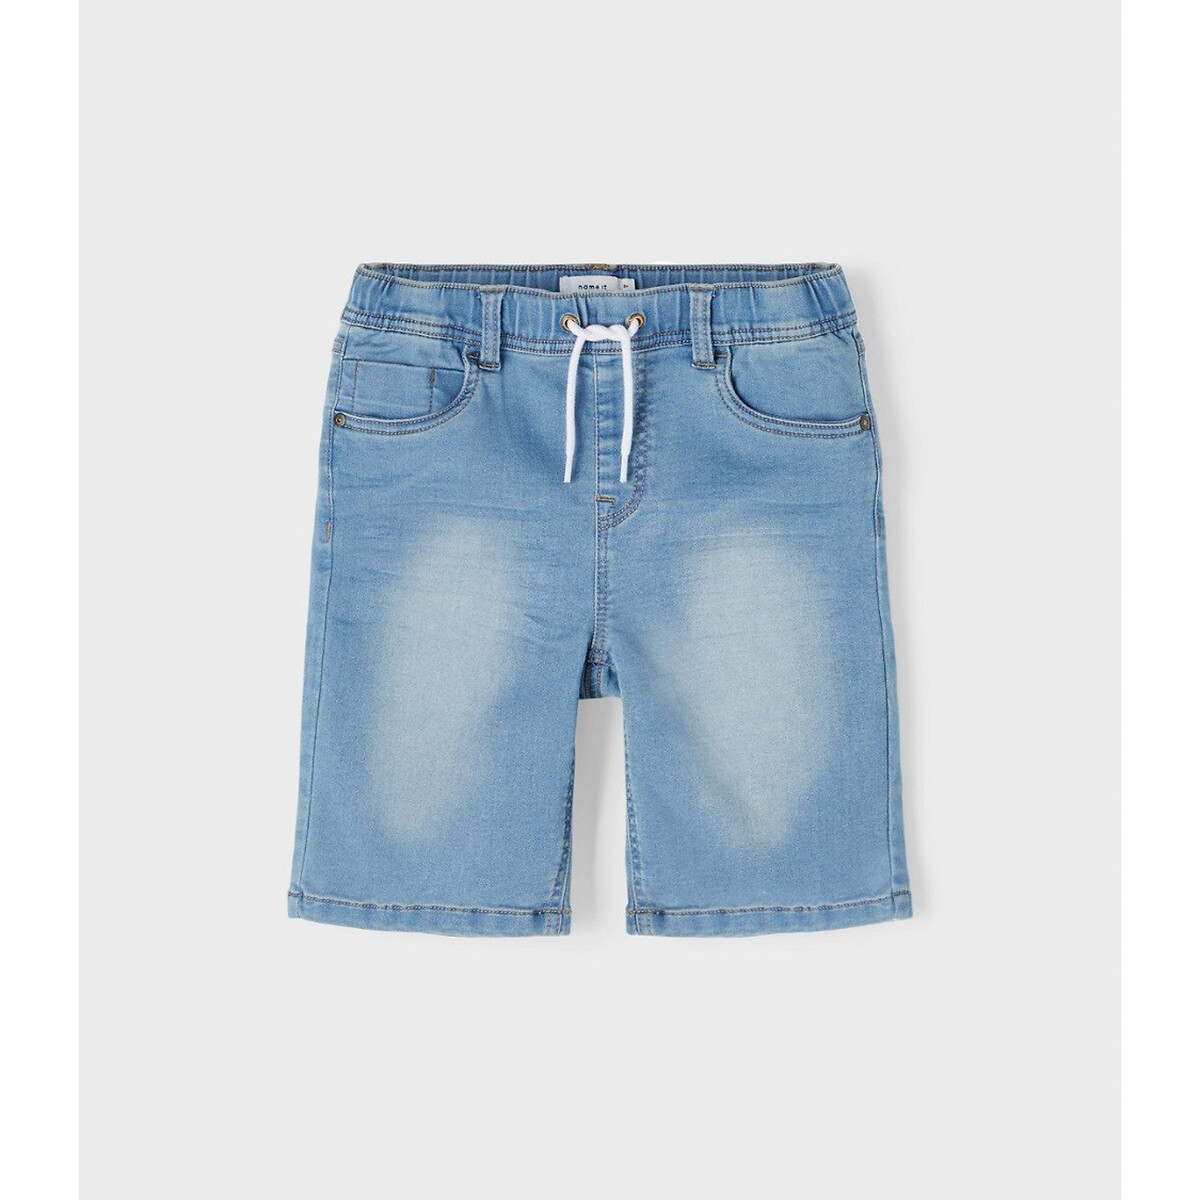 Шорты из джинсовой ткани в стиле джоггеров  9 синий LaRedoute, размер 9 - фото 3